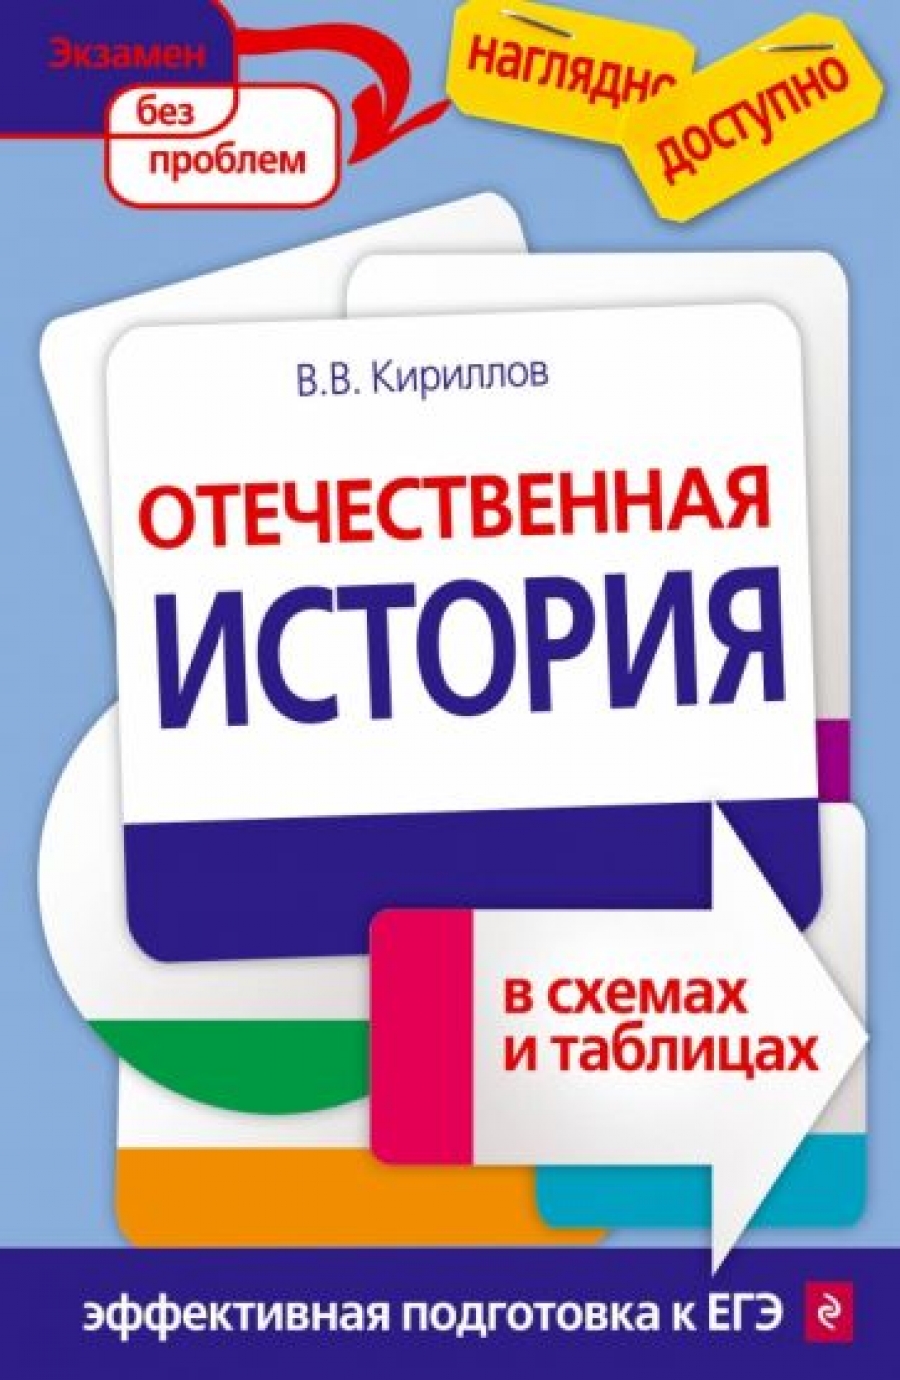 Кириллов В.В. Отечественная история в схемах и таблицах 